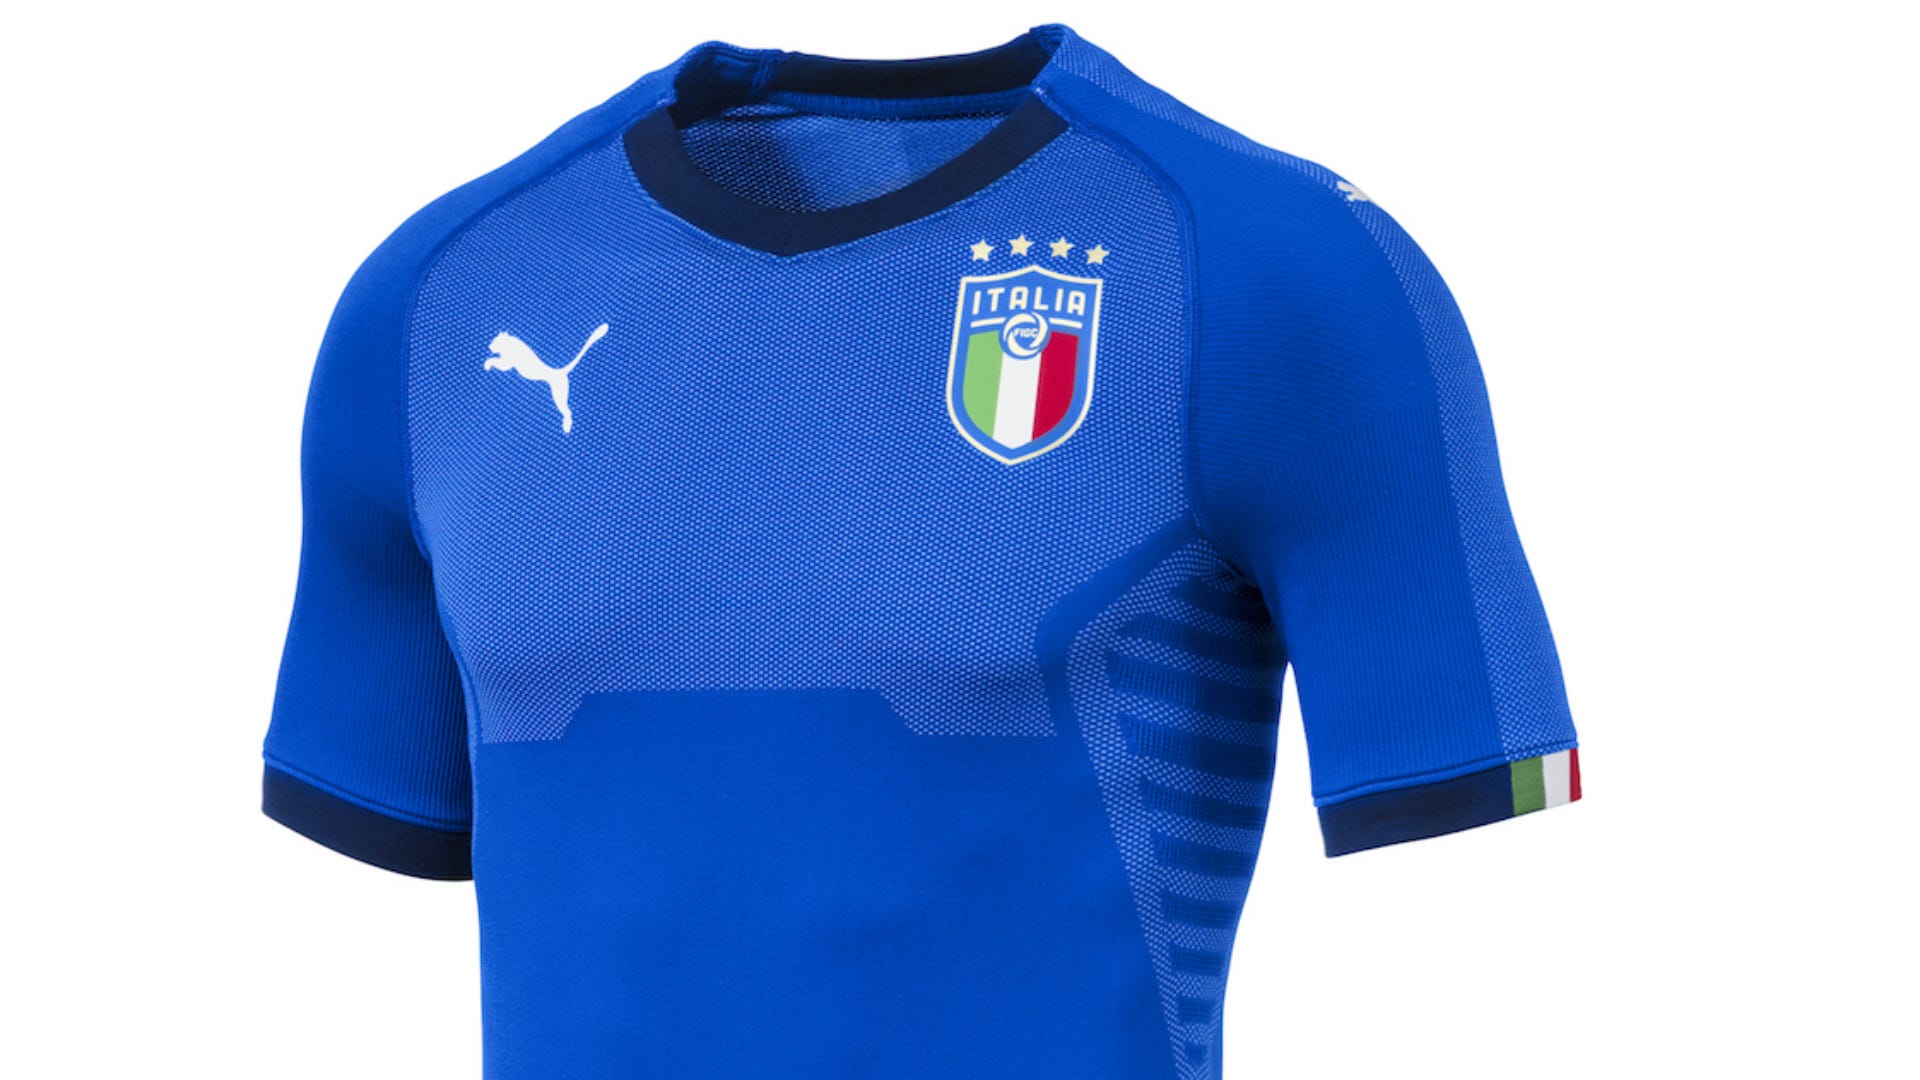 Por es azul la camiseta de la Selección de Italia? | Goal.com Espana